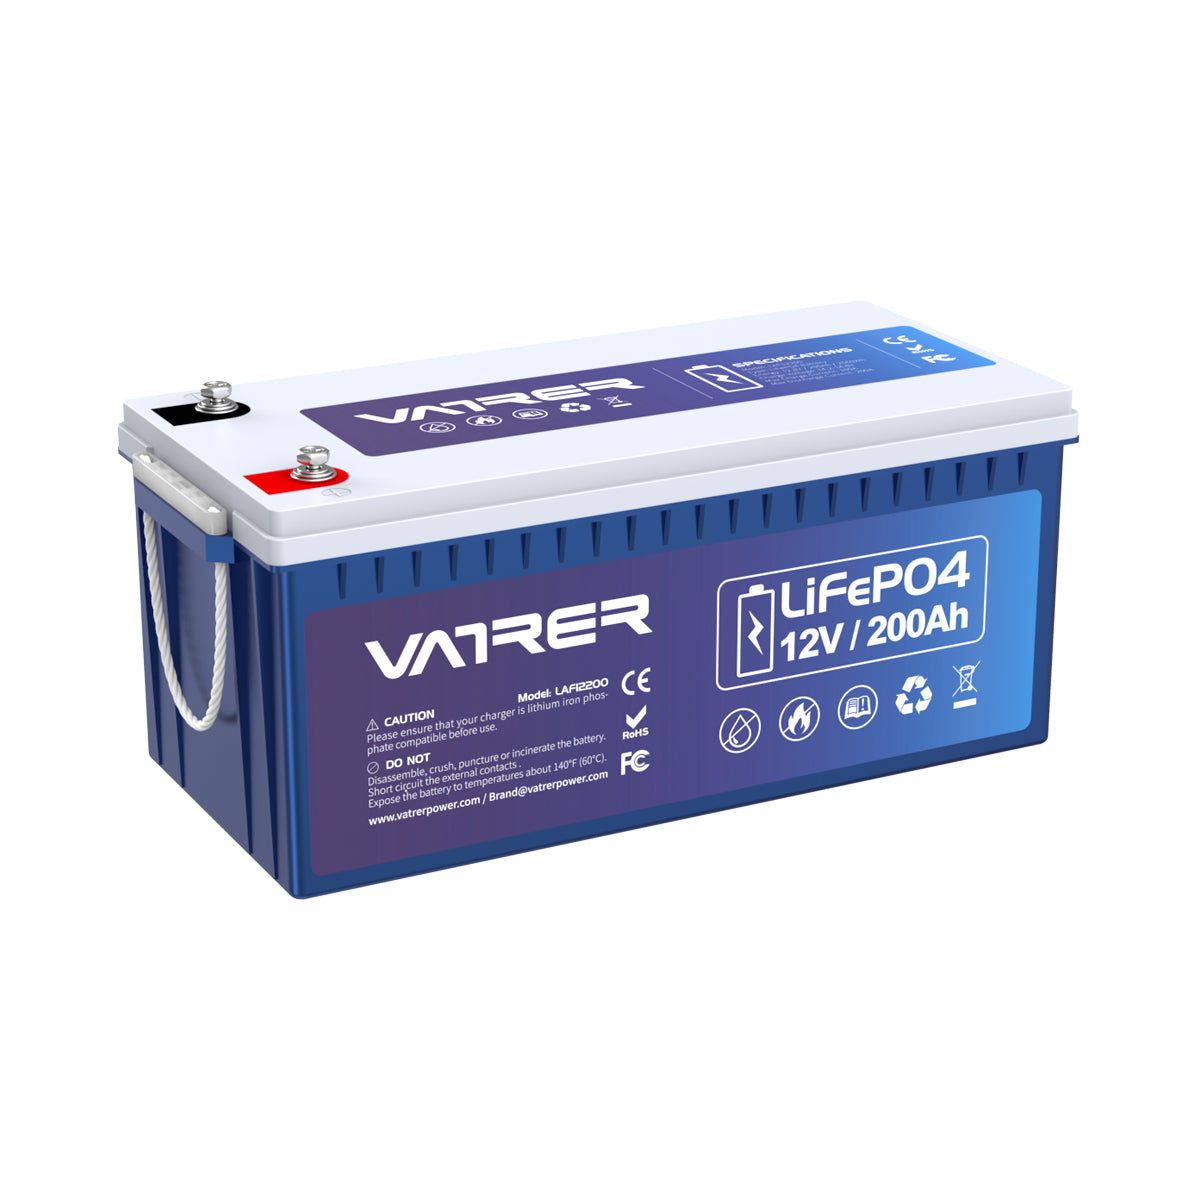 12V 200Ah Plus LiFePO4 リチウム電池、内蔵 200A BMS & 低温カットオフ